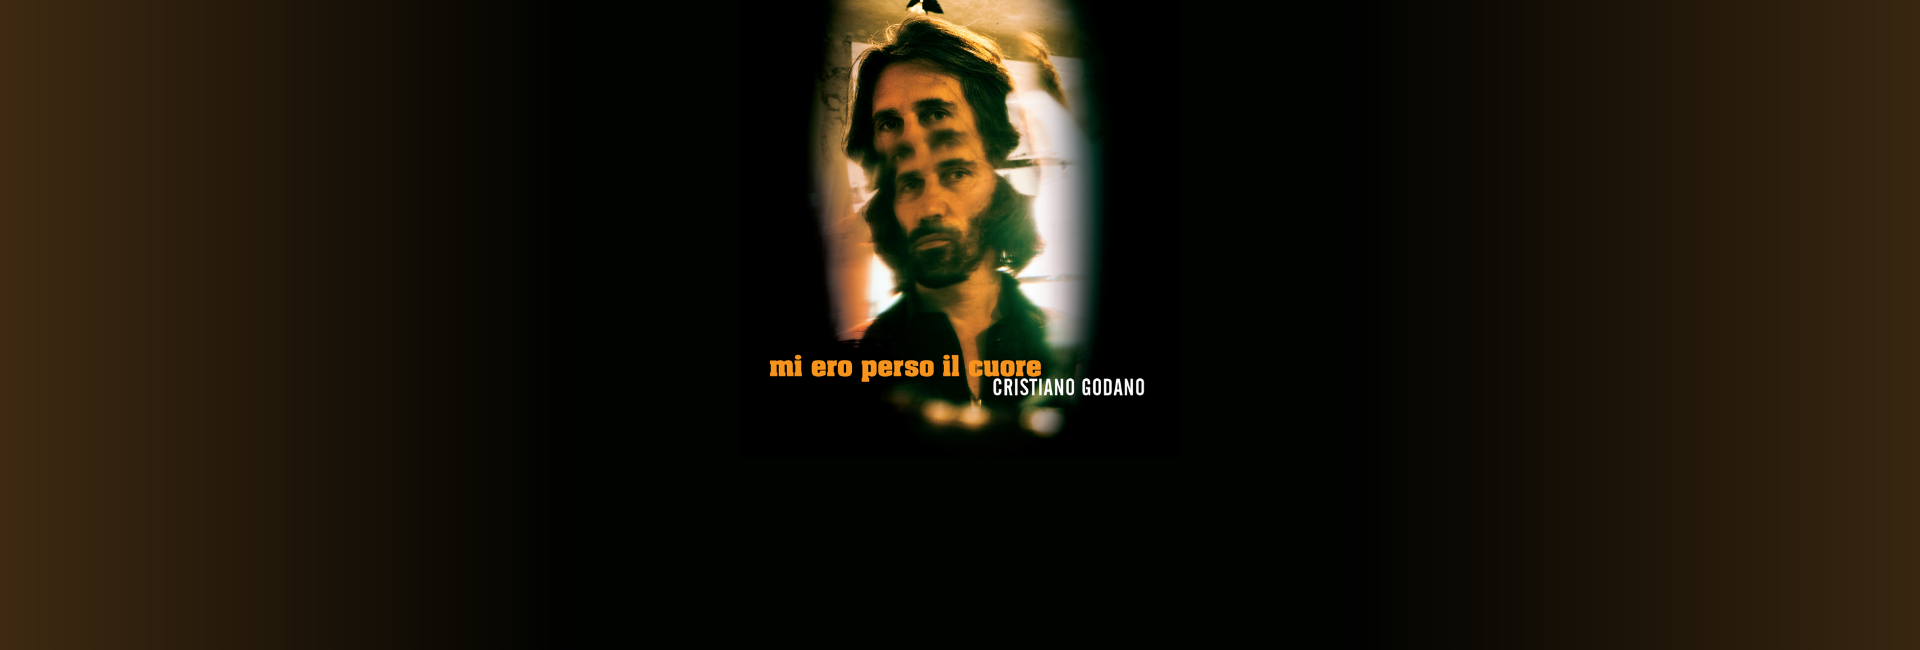 Cristiano Godano – “Mi ero perso il cuore”,
l’album d’esordio solista.
